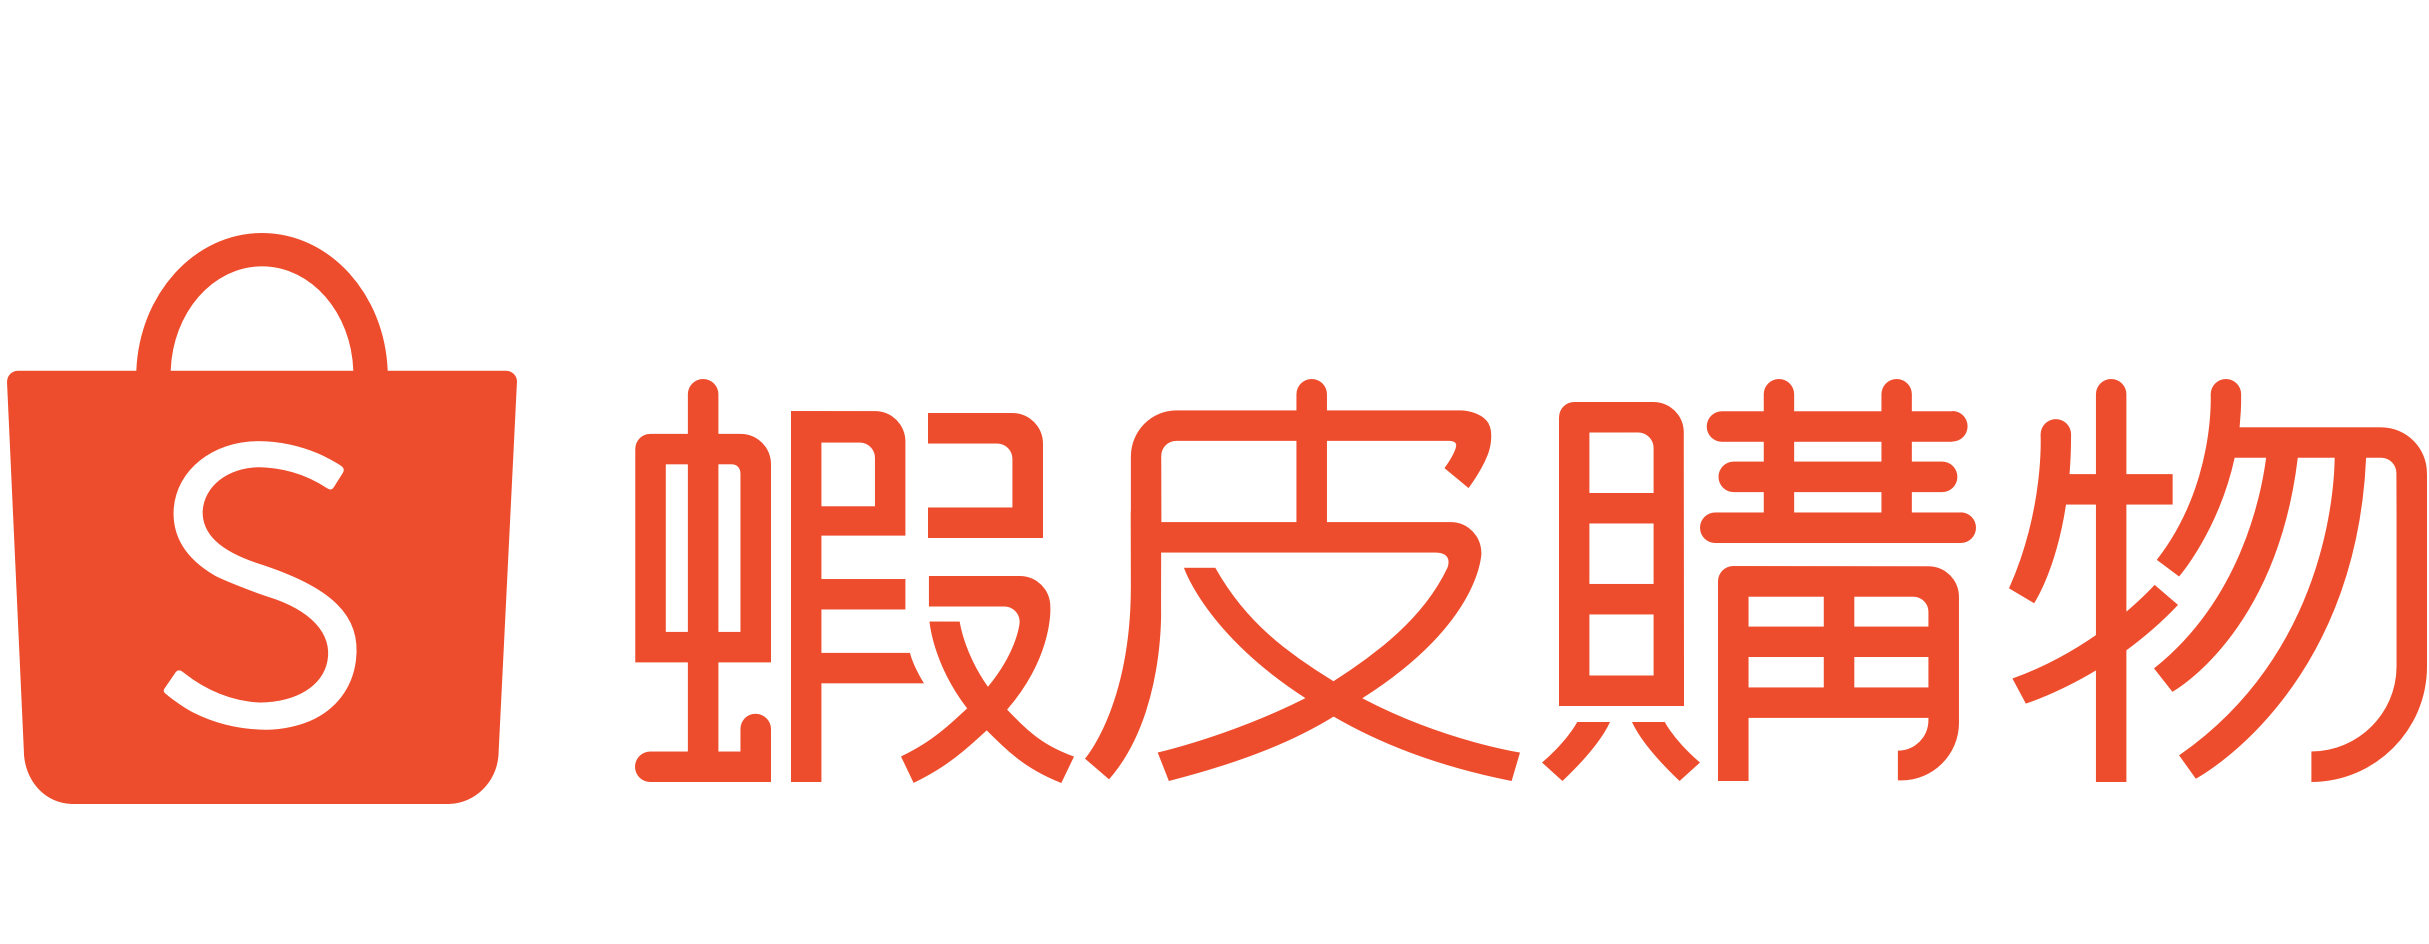 shopee chinese emblem logo #40481